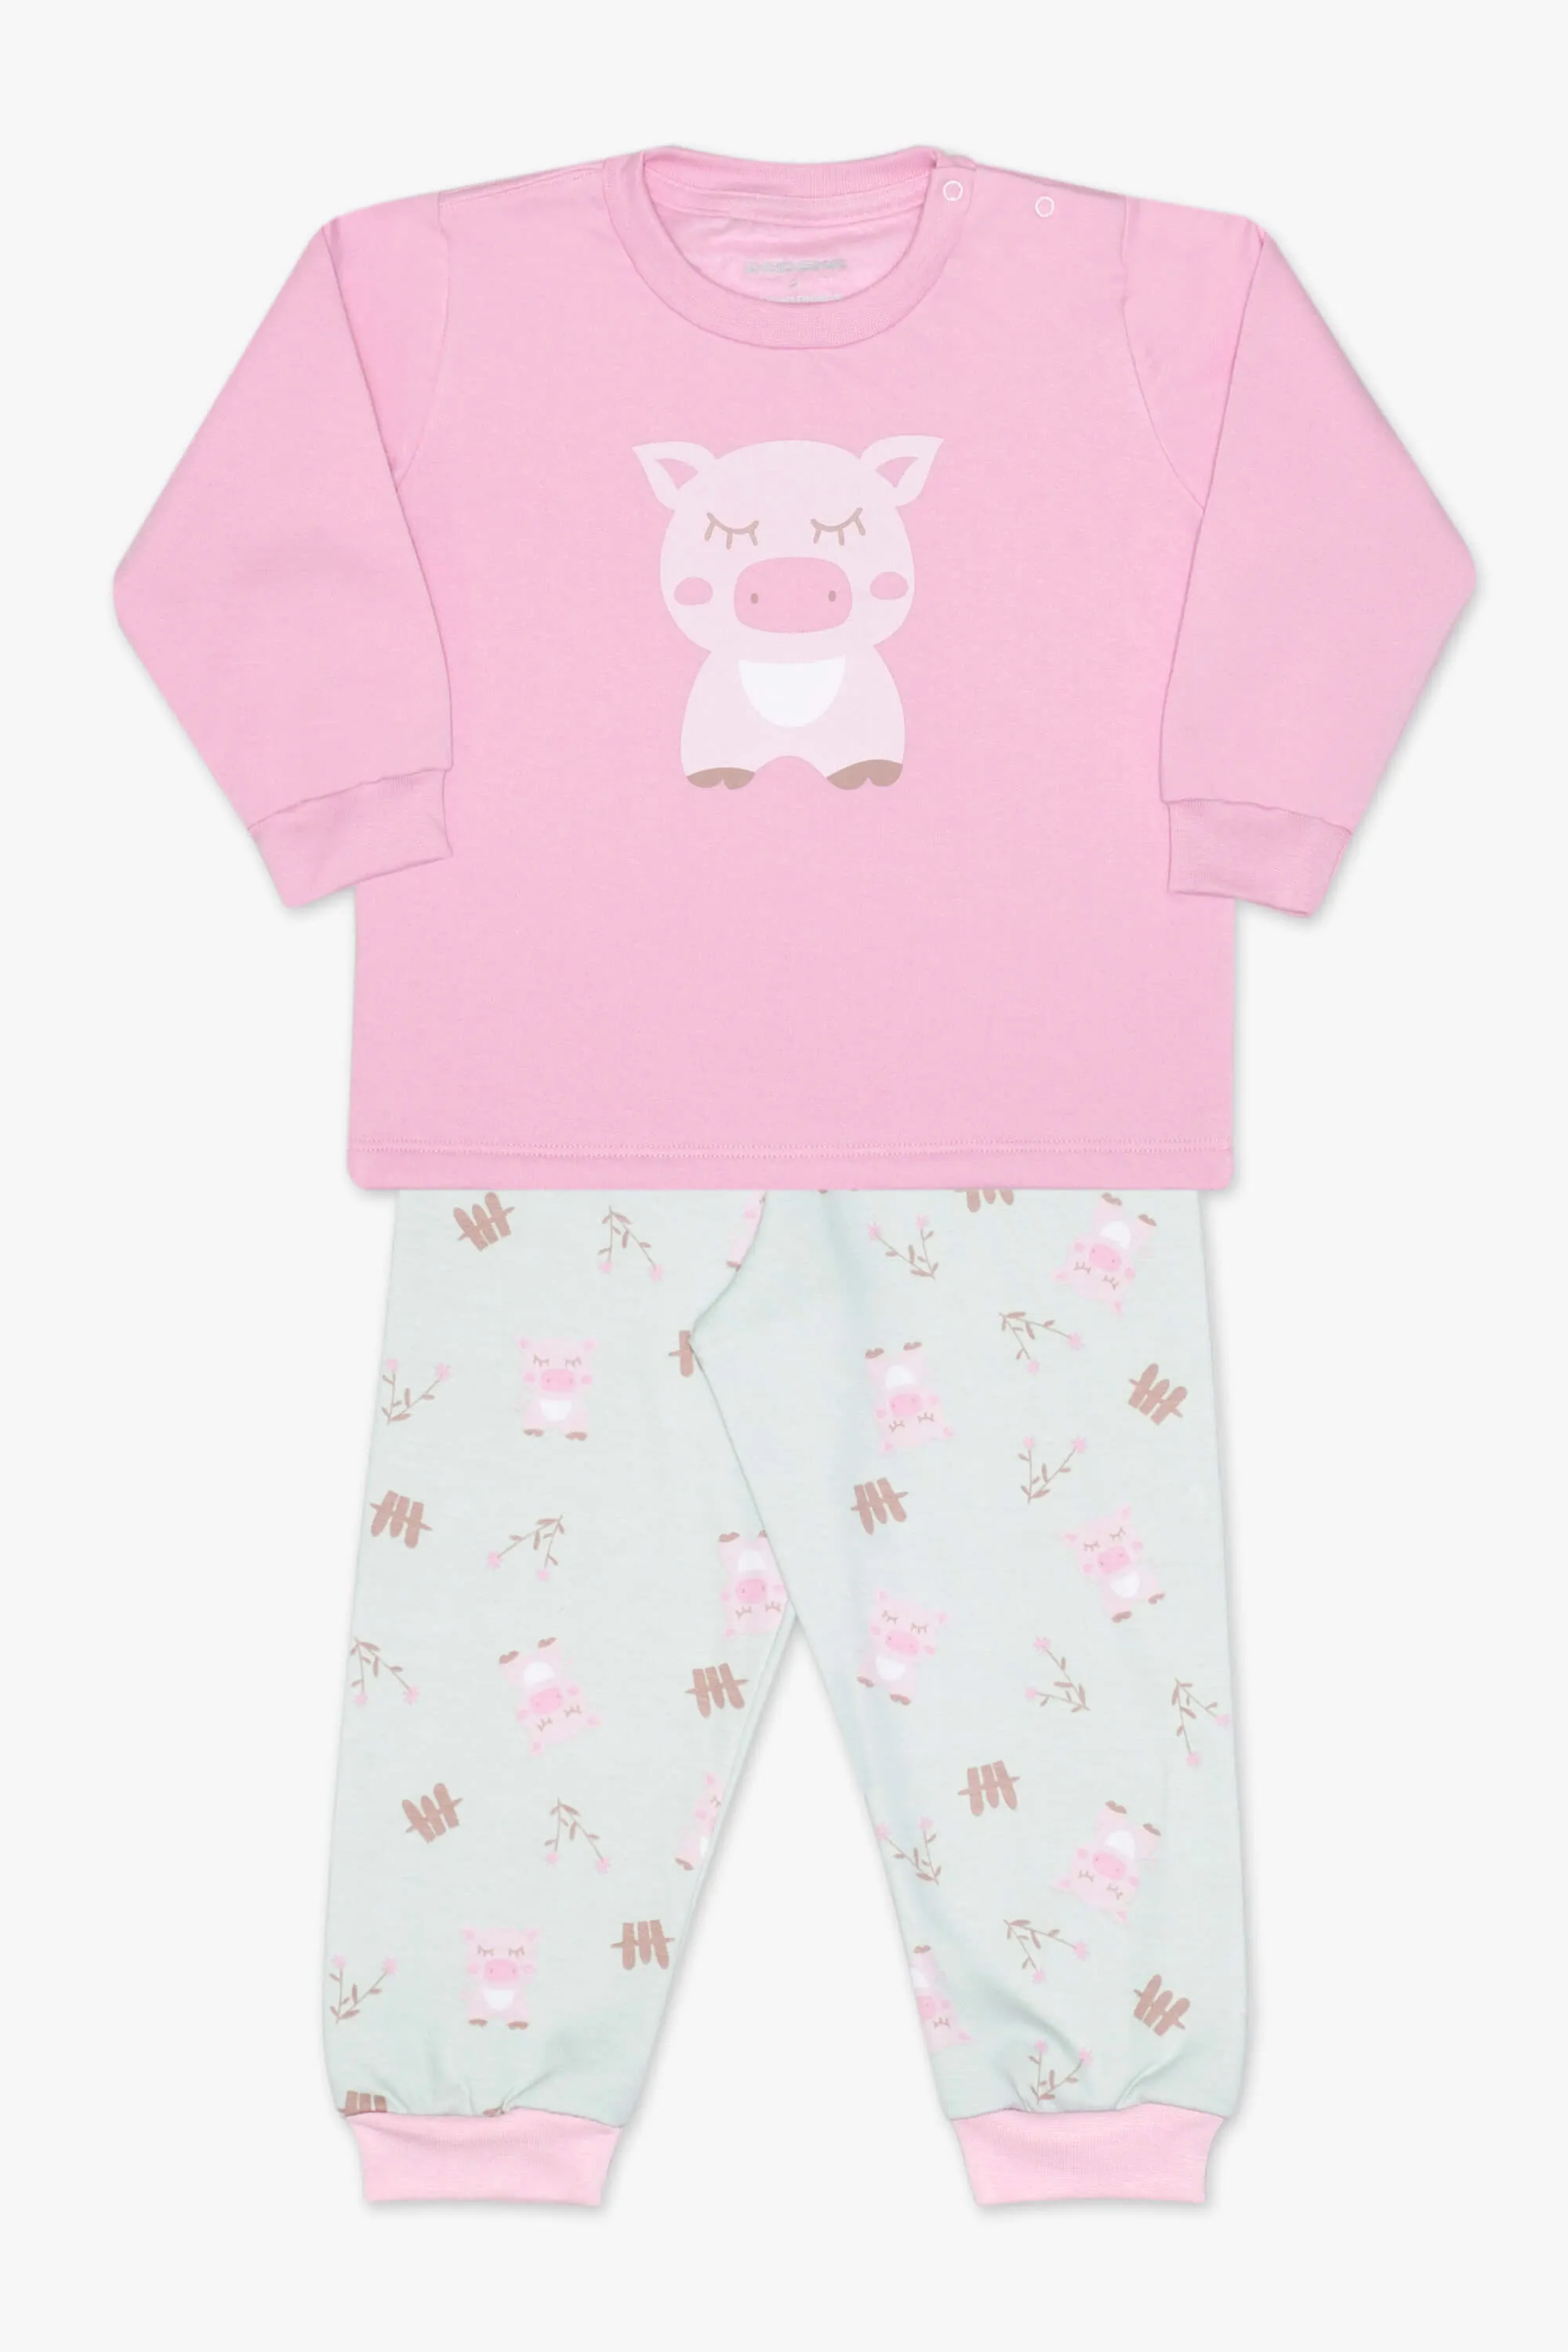 Pijama moletinho porquinho rosa T2 24692 Dedeka